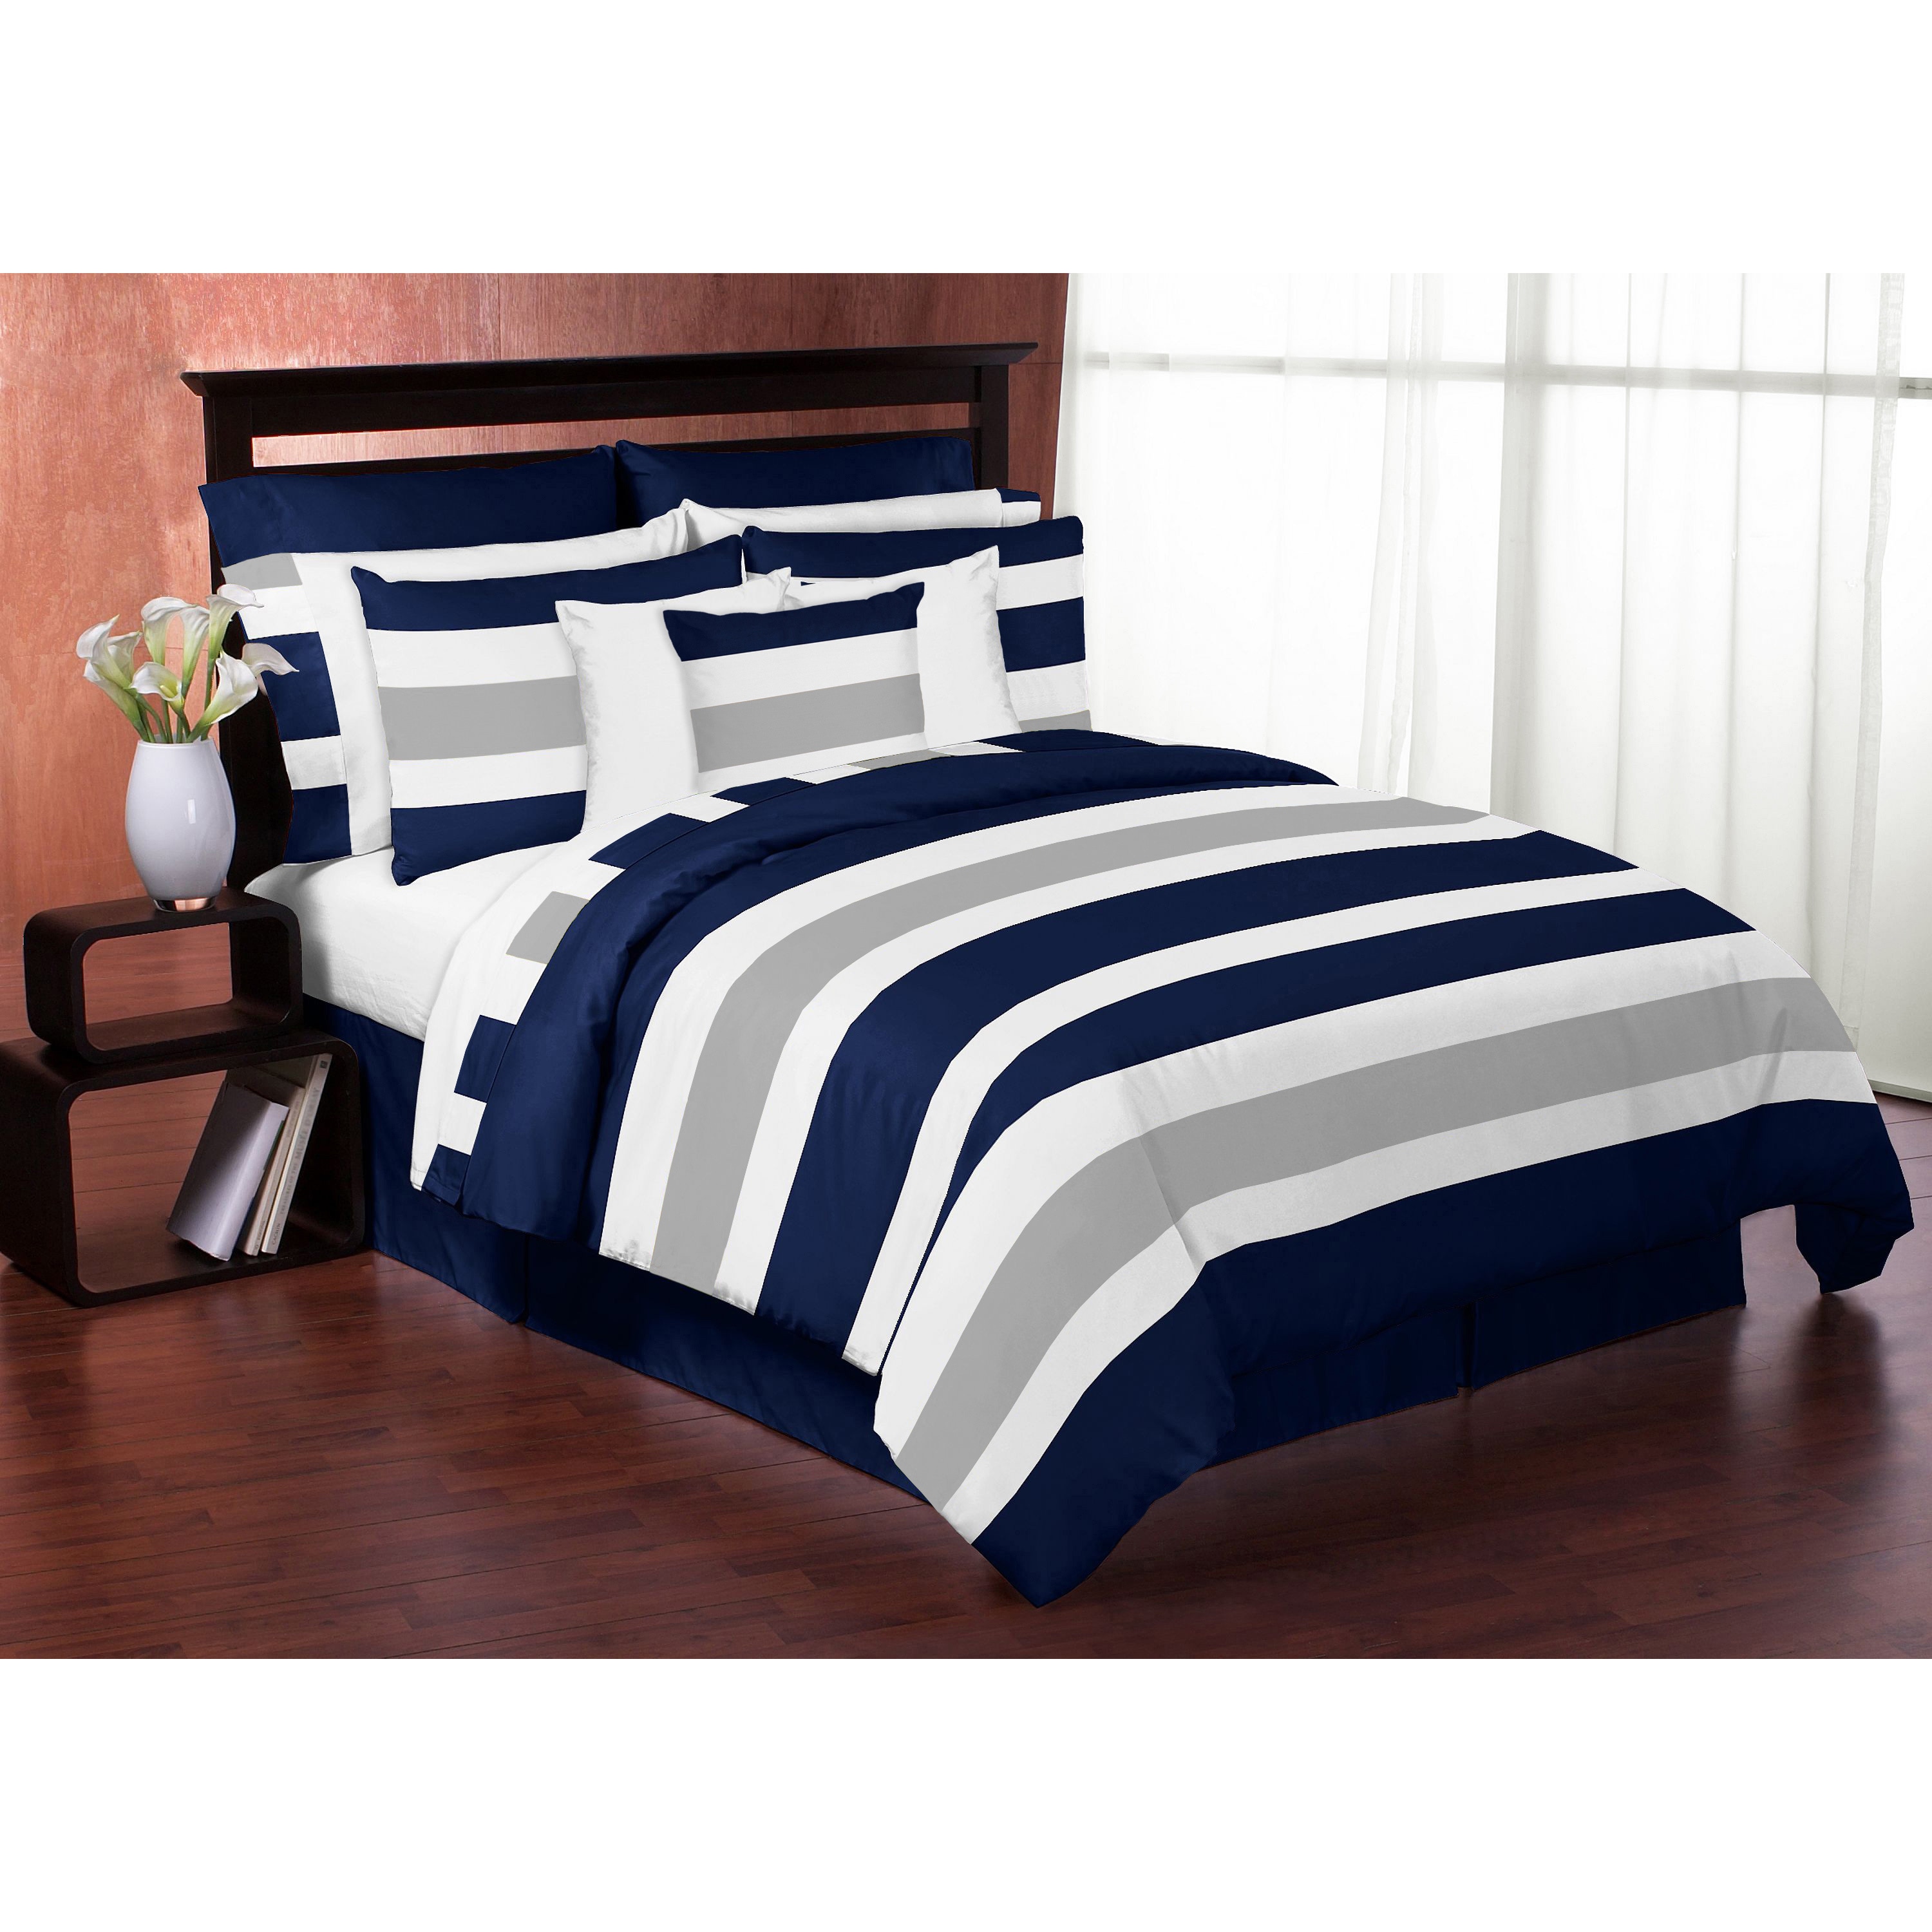 Sweet Jojo Designs Navy Blue And Gray Stripe 3 Piece Full Queen Size Comforter Set Overstock 12917242